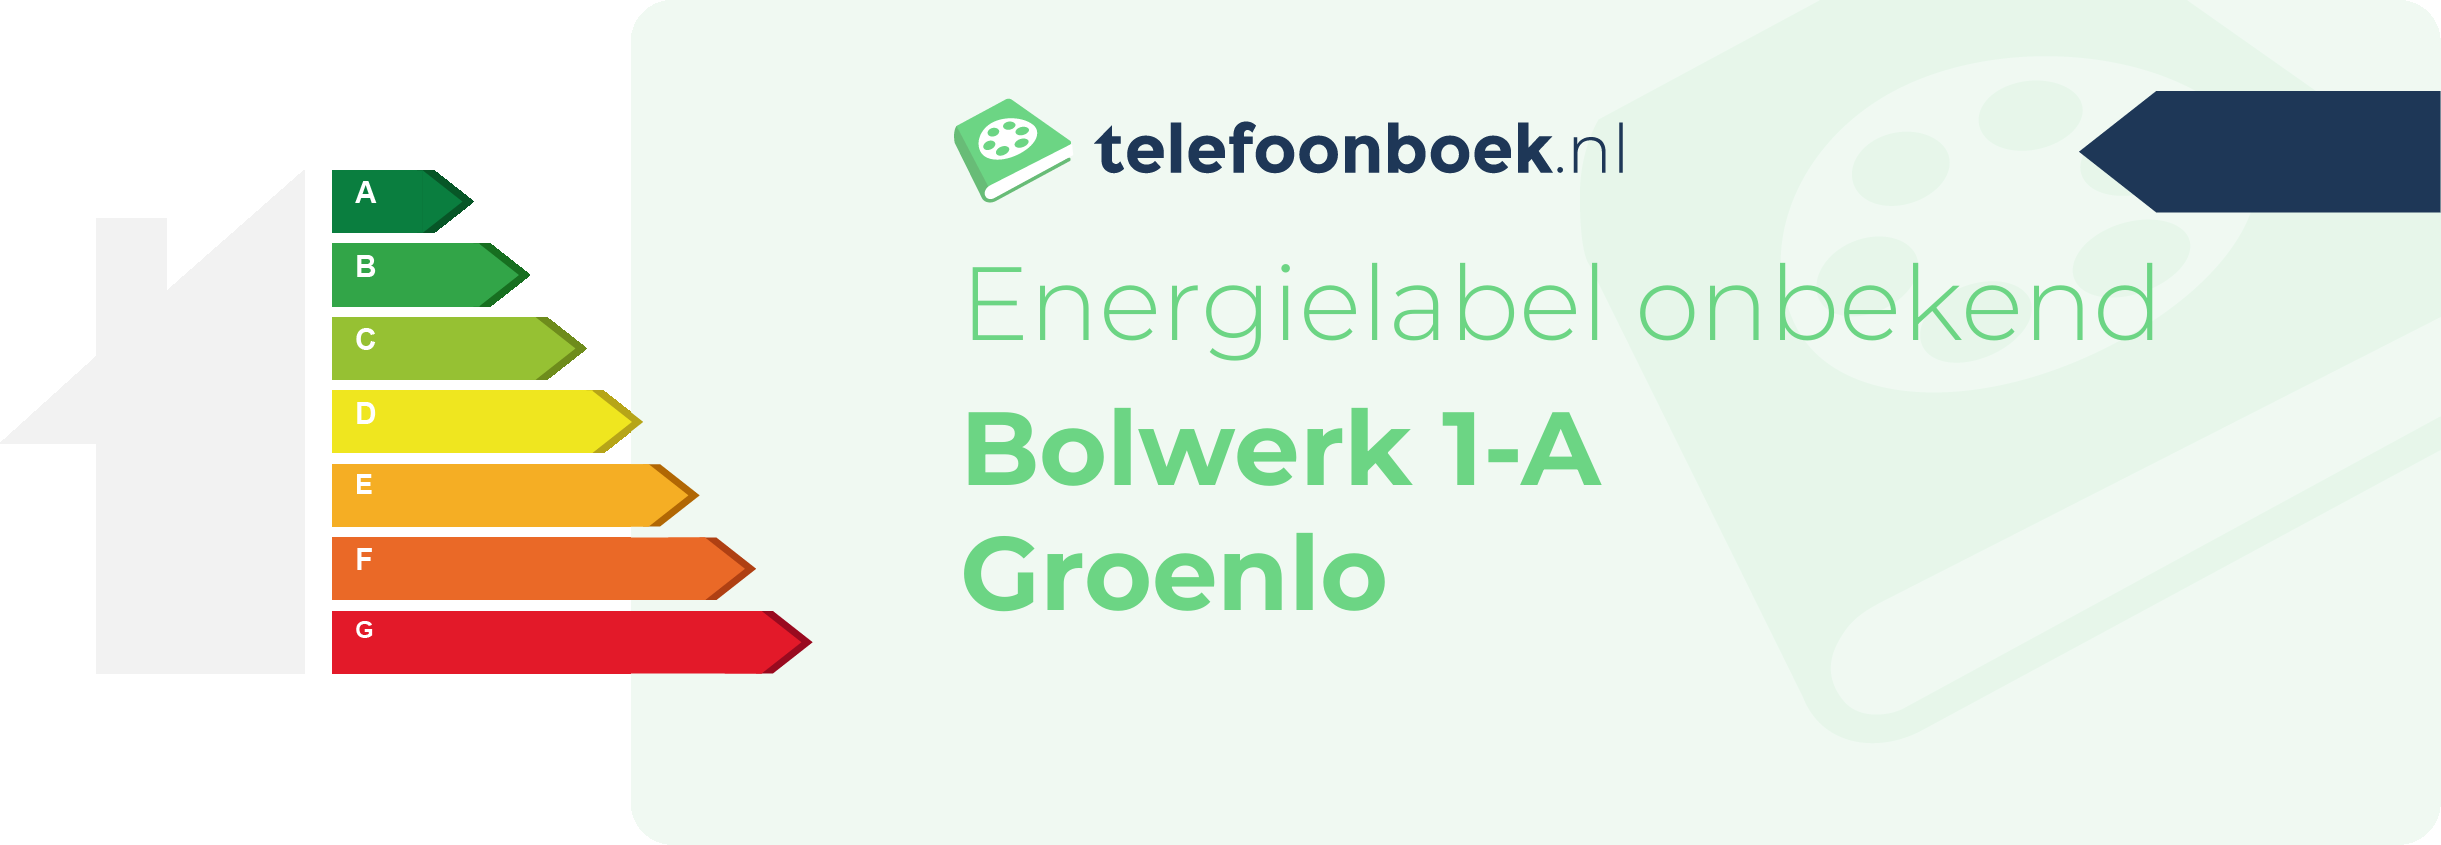 Energielabel Bolwerk 1-A Groenlo